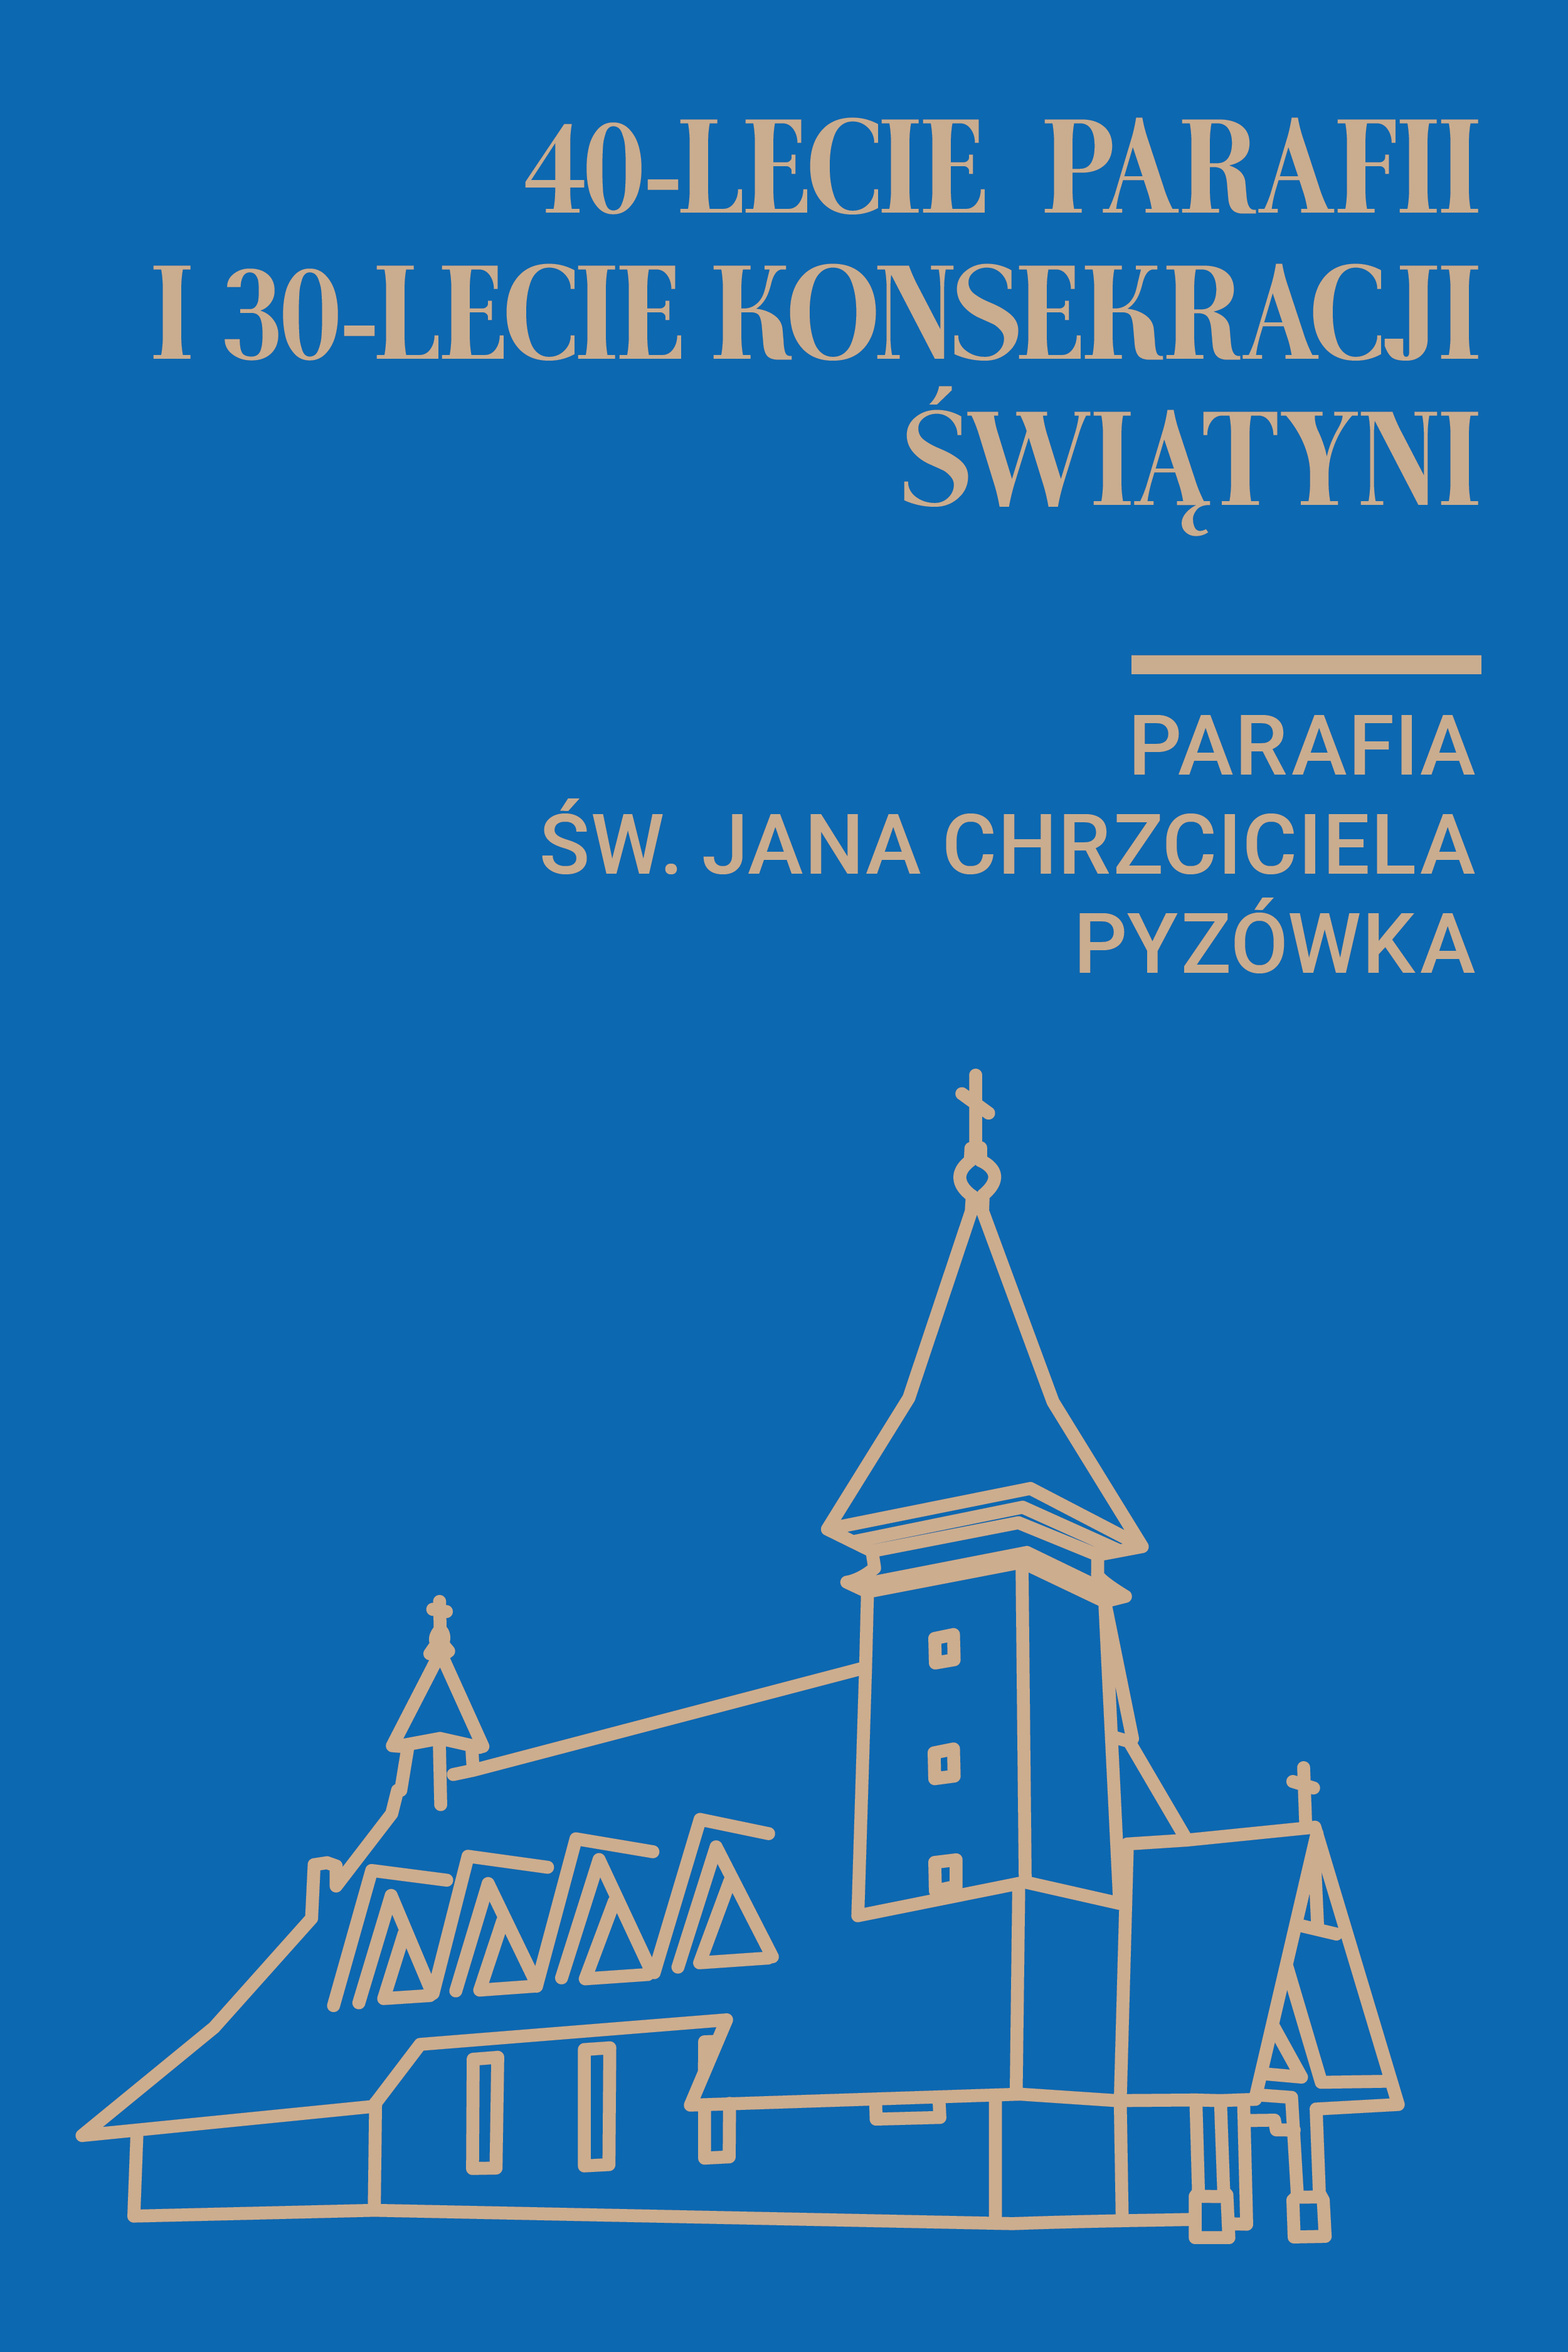 40-lecie parafii i 30-lecie konsekracji kościoła św. Jana Chrzciciela w Pyzówce